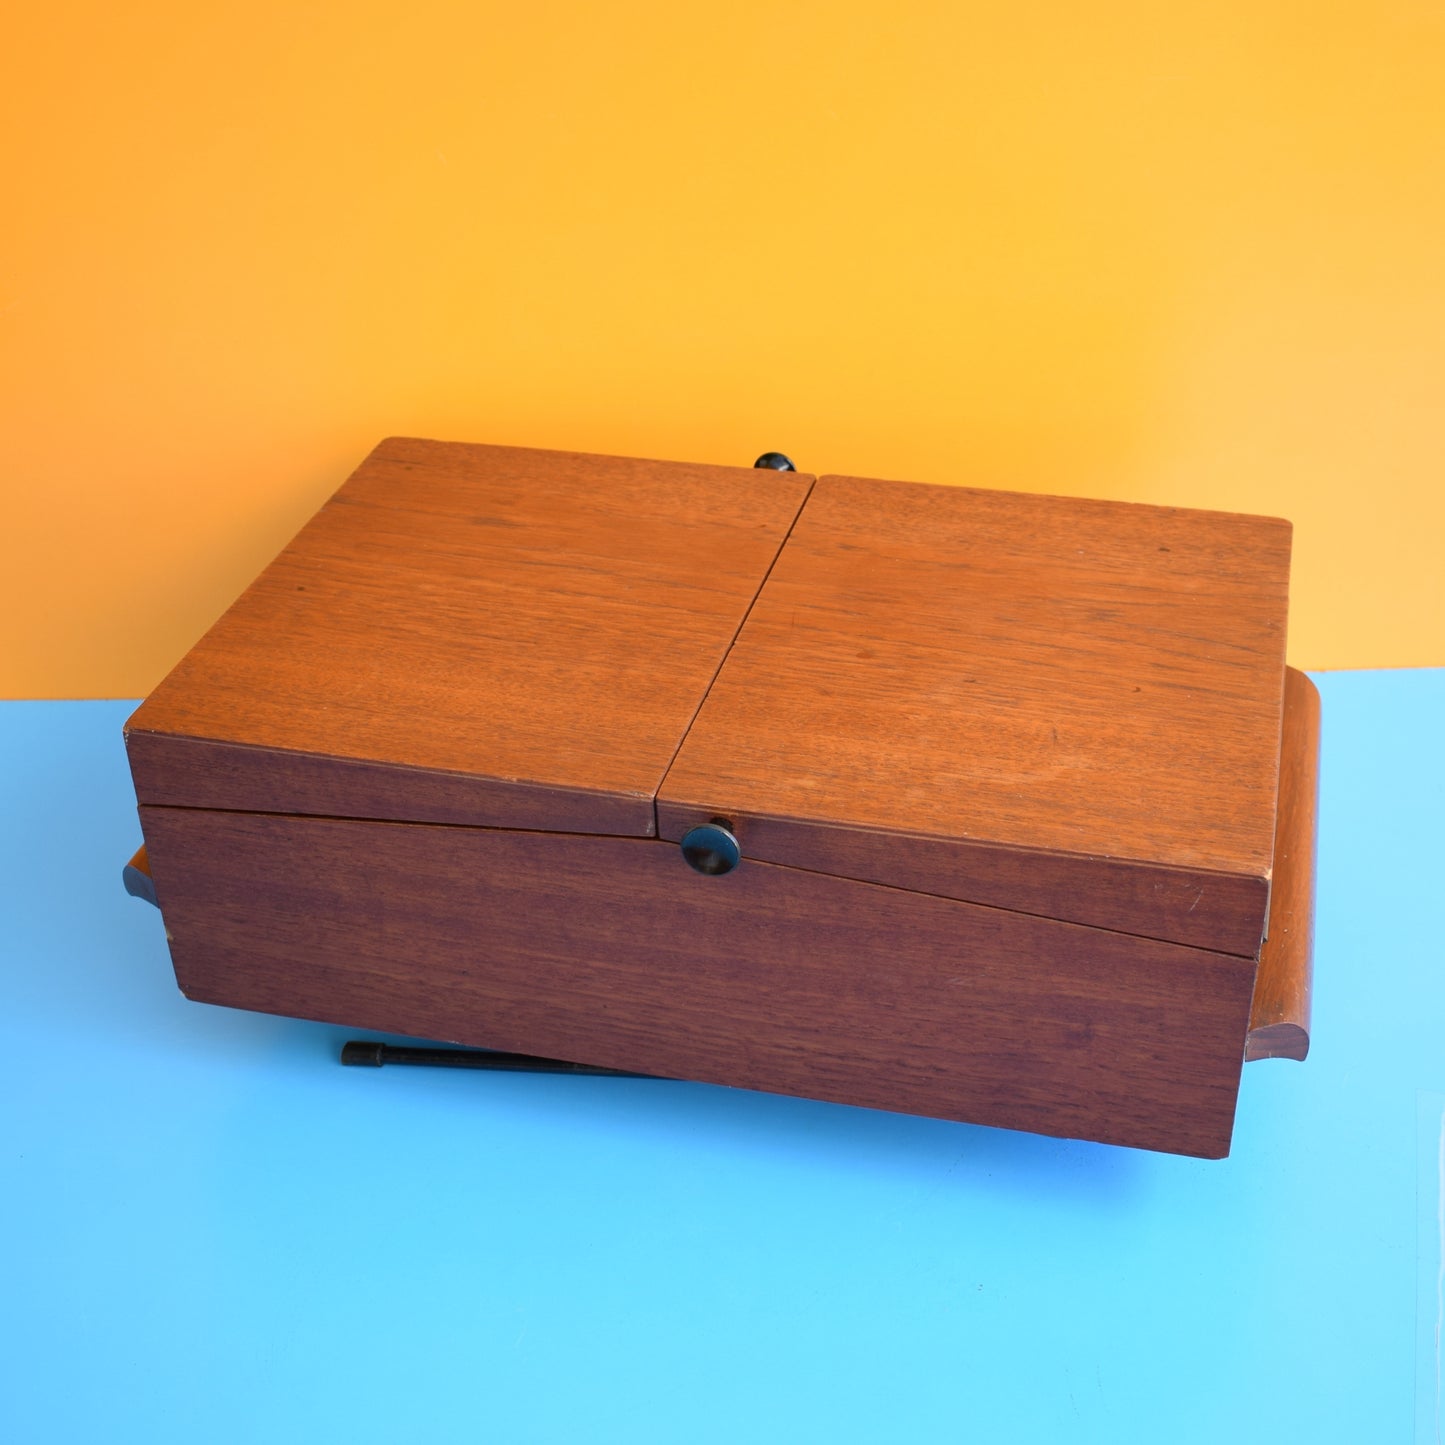 Vintage 1950s Sewing / Hobby Box - Teak